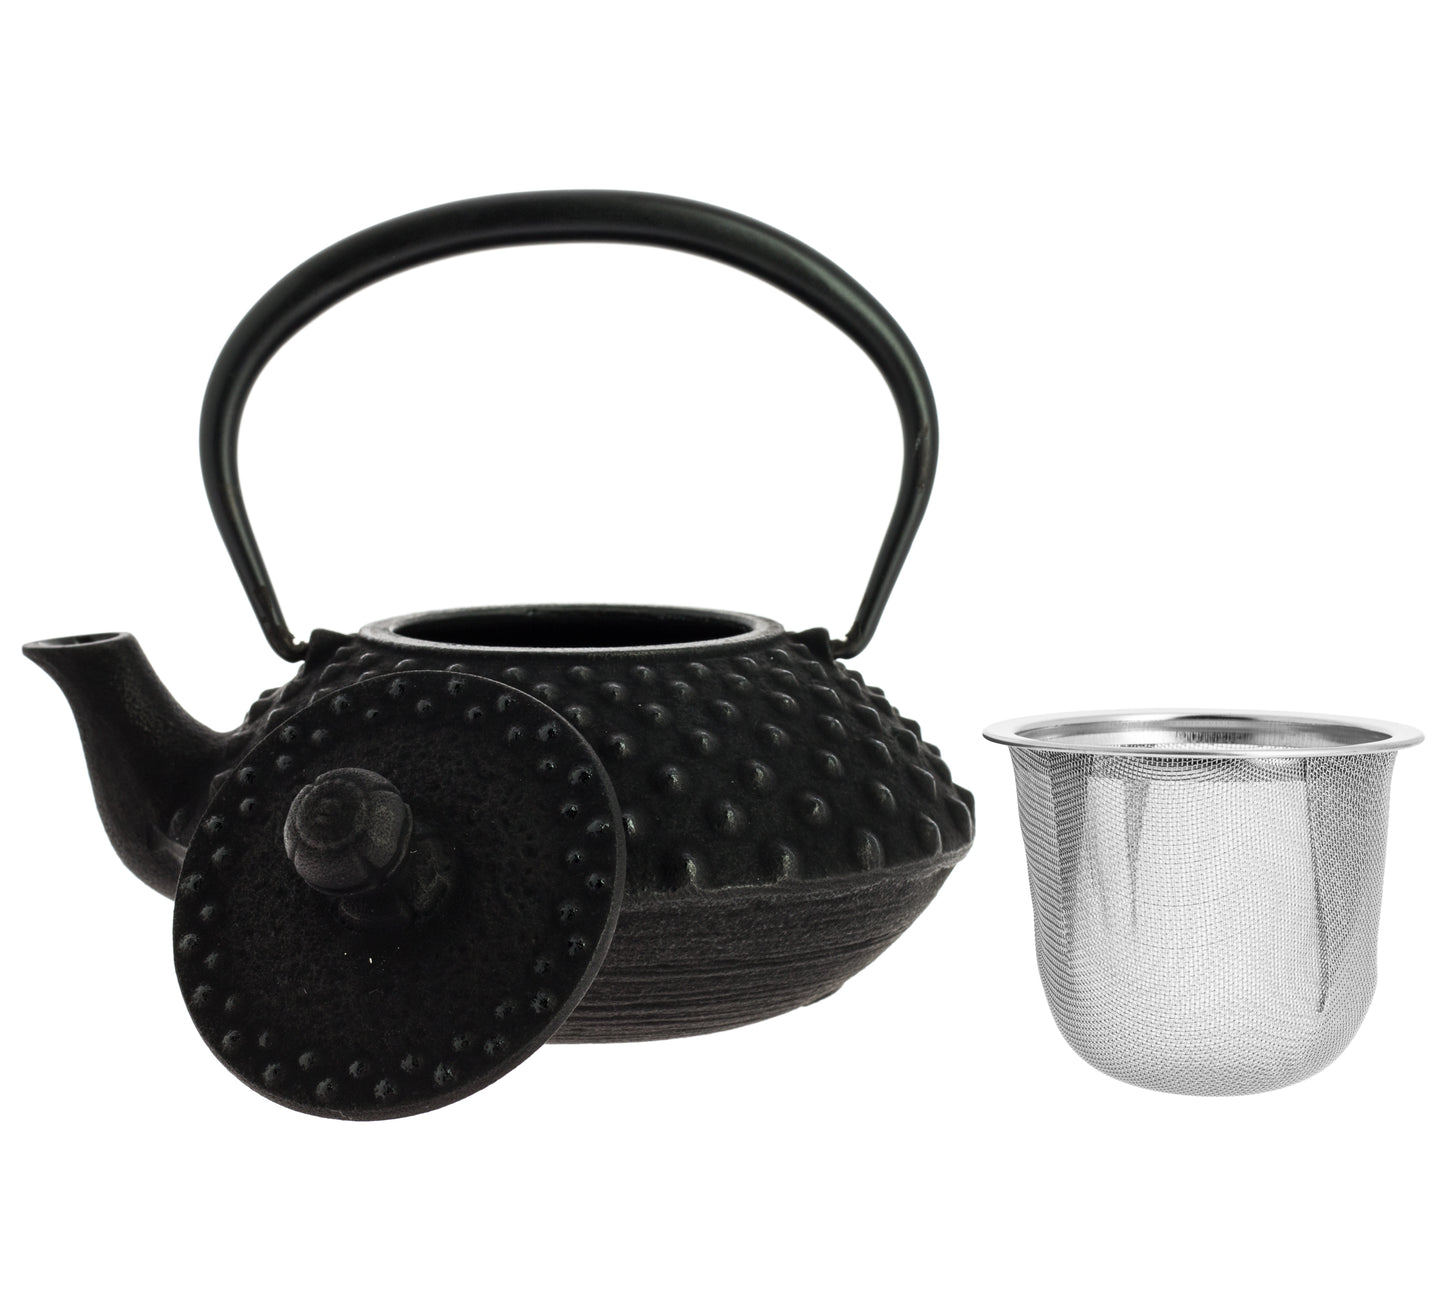 Kanbin Iwachu Teapot - Black, 350 ml